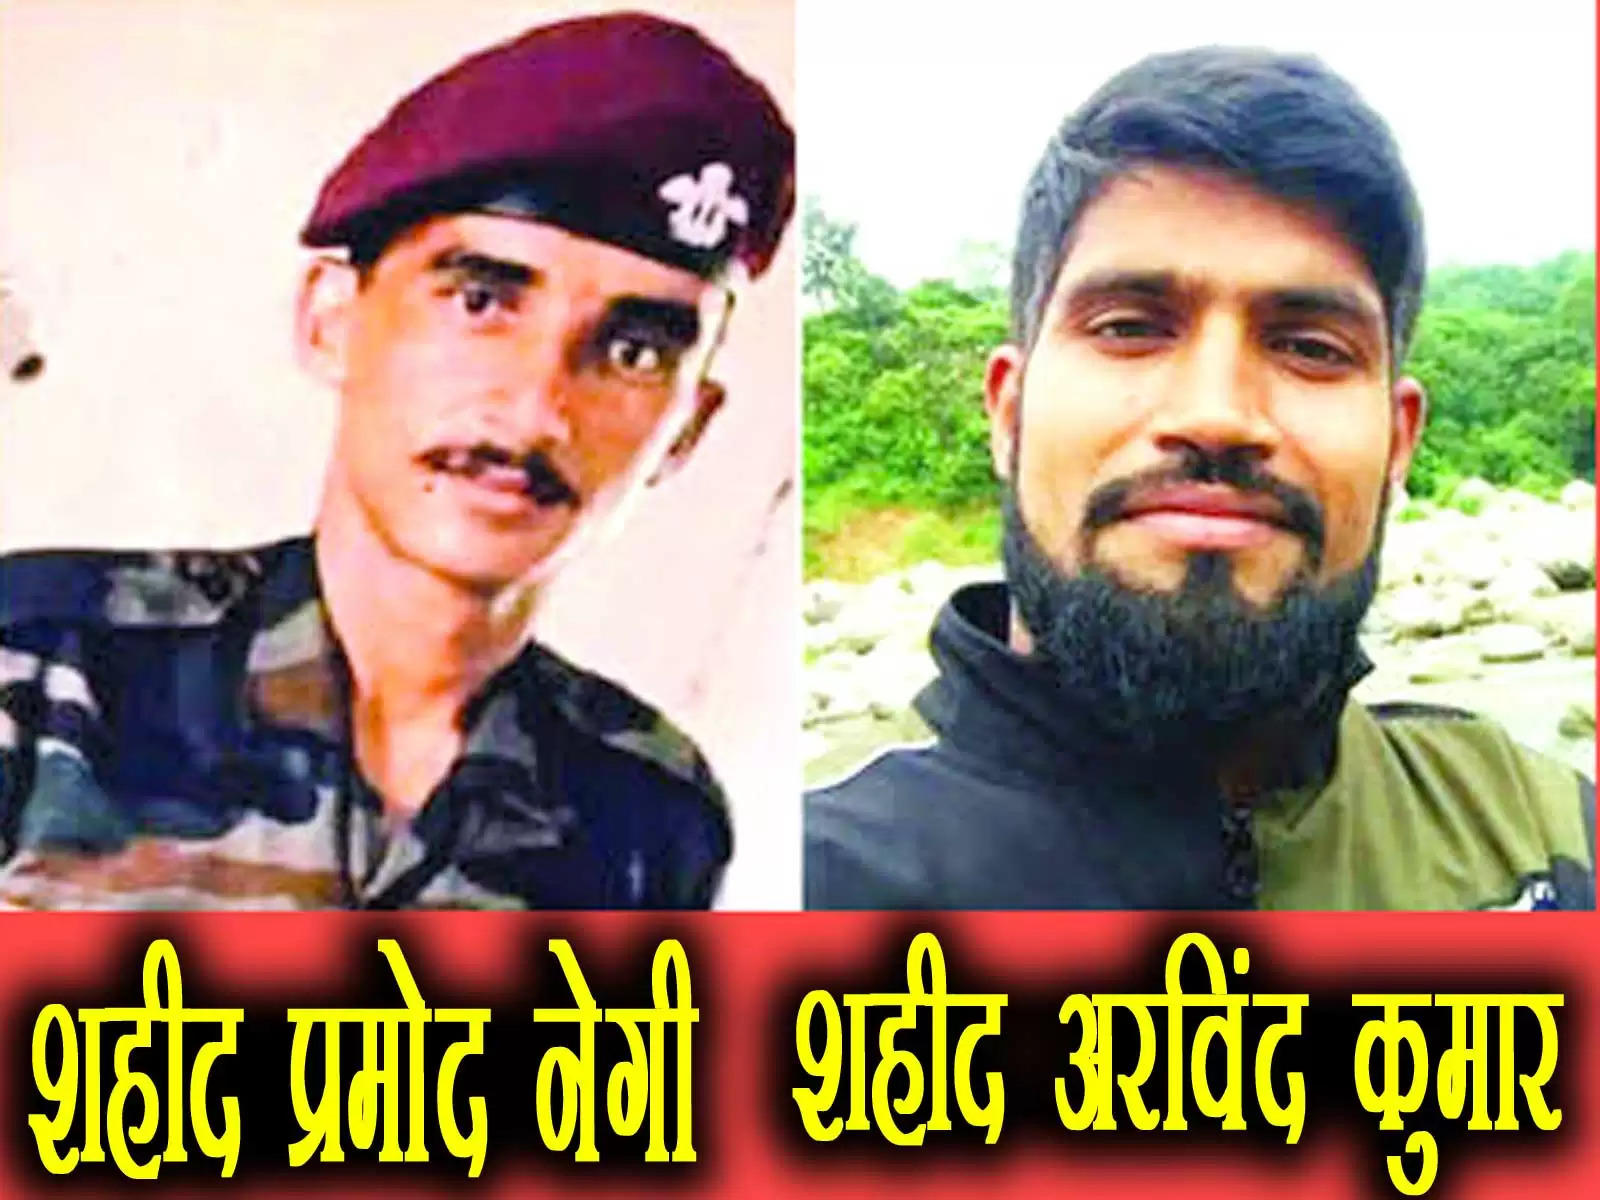 जम्मू-कश्मीर के राजौरी में आतंकी मुठभेड़ के दौरान हिमाचल के दो जवान शहीद हो गए हैं। इसमें कांगड़ा जिले के अरविंद कुमार और सिरमौर जिले के प्रमोद नेगी शामिल हैं।    Rajouri Encounter: 2 soldiers of Himachal martyred in terrorist encounter, CM Sukhu expressed grief 